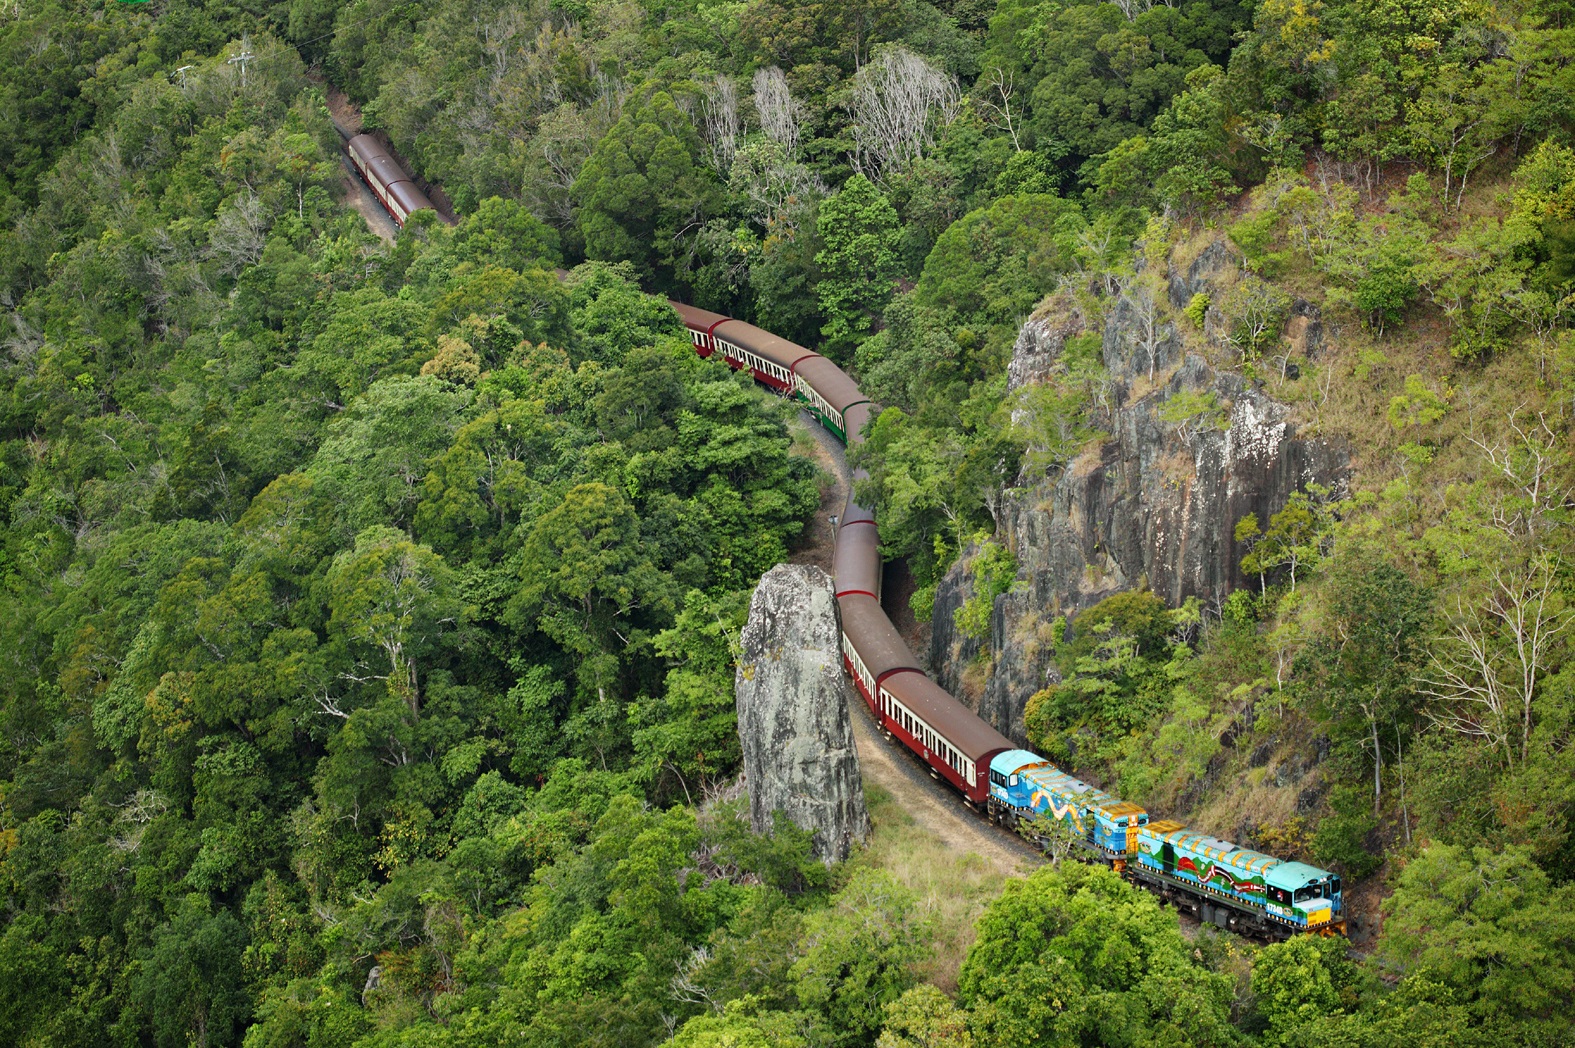 Kuranda: Skyrail, Rainforestation and Scenic Rail S-0900 Q-1530 XC